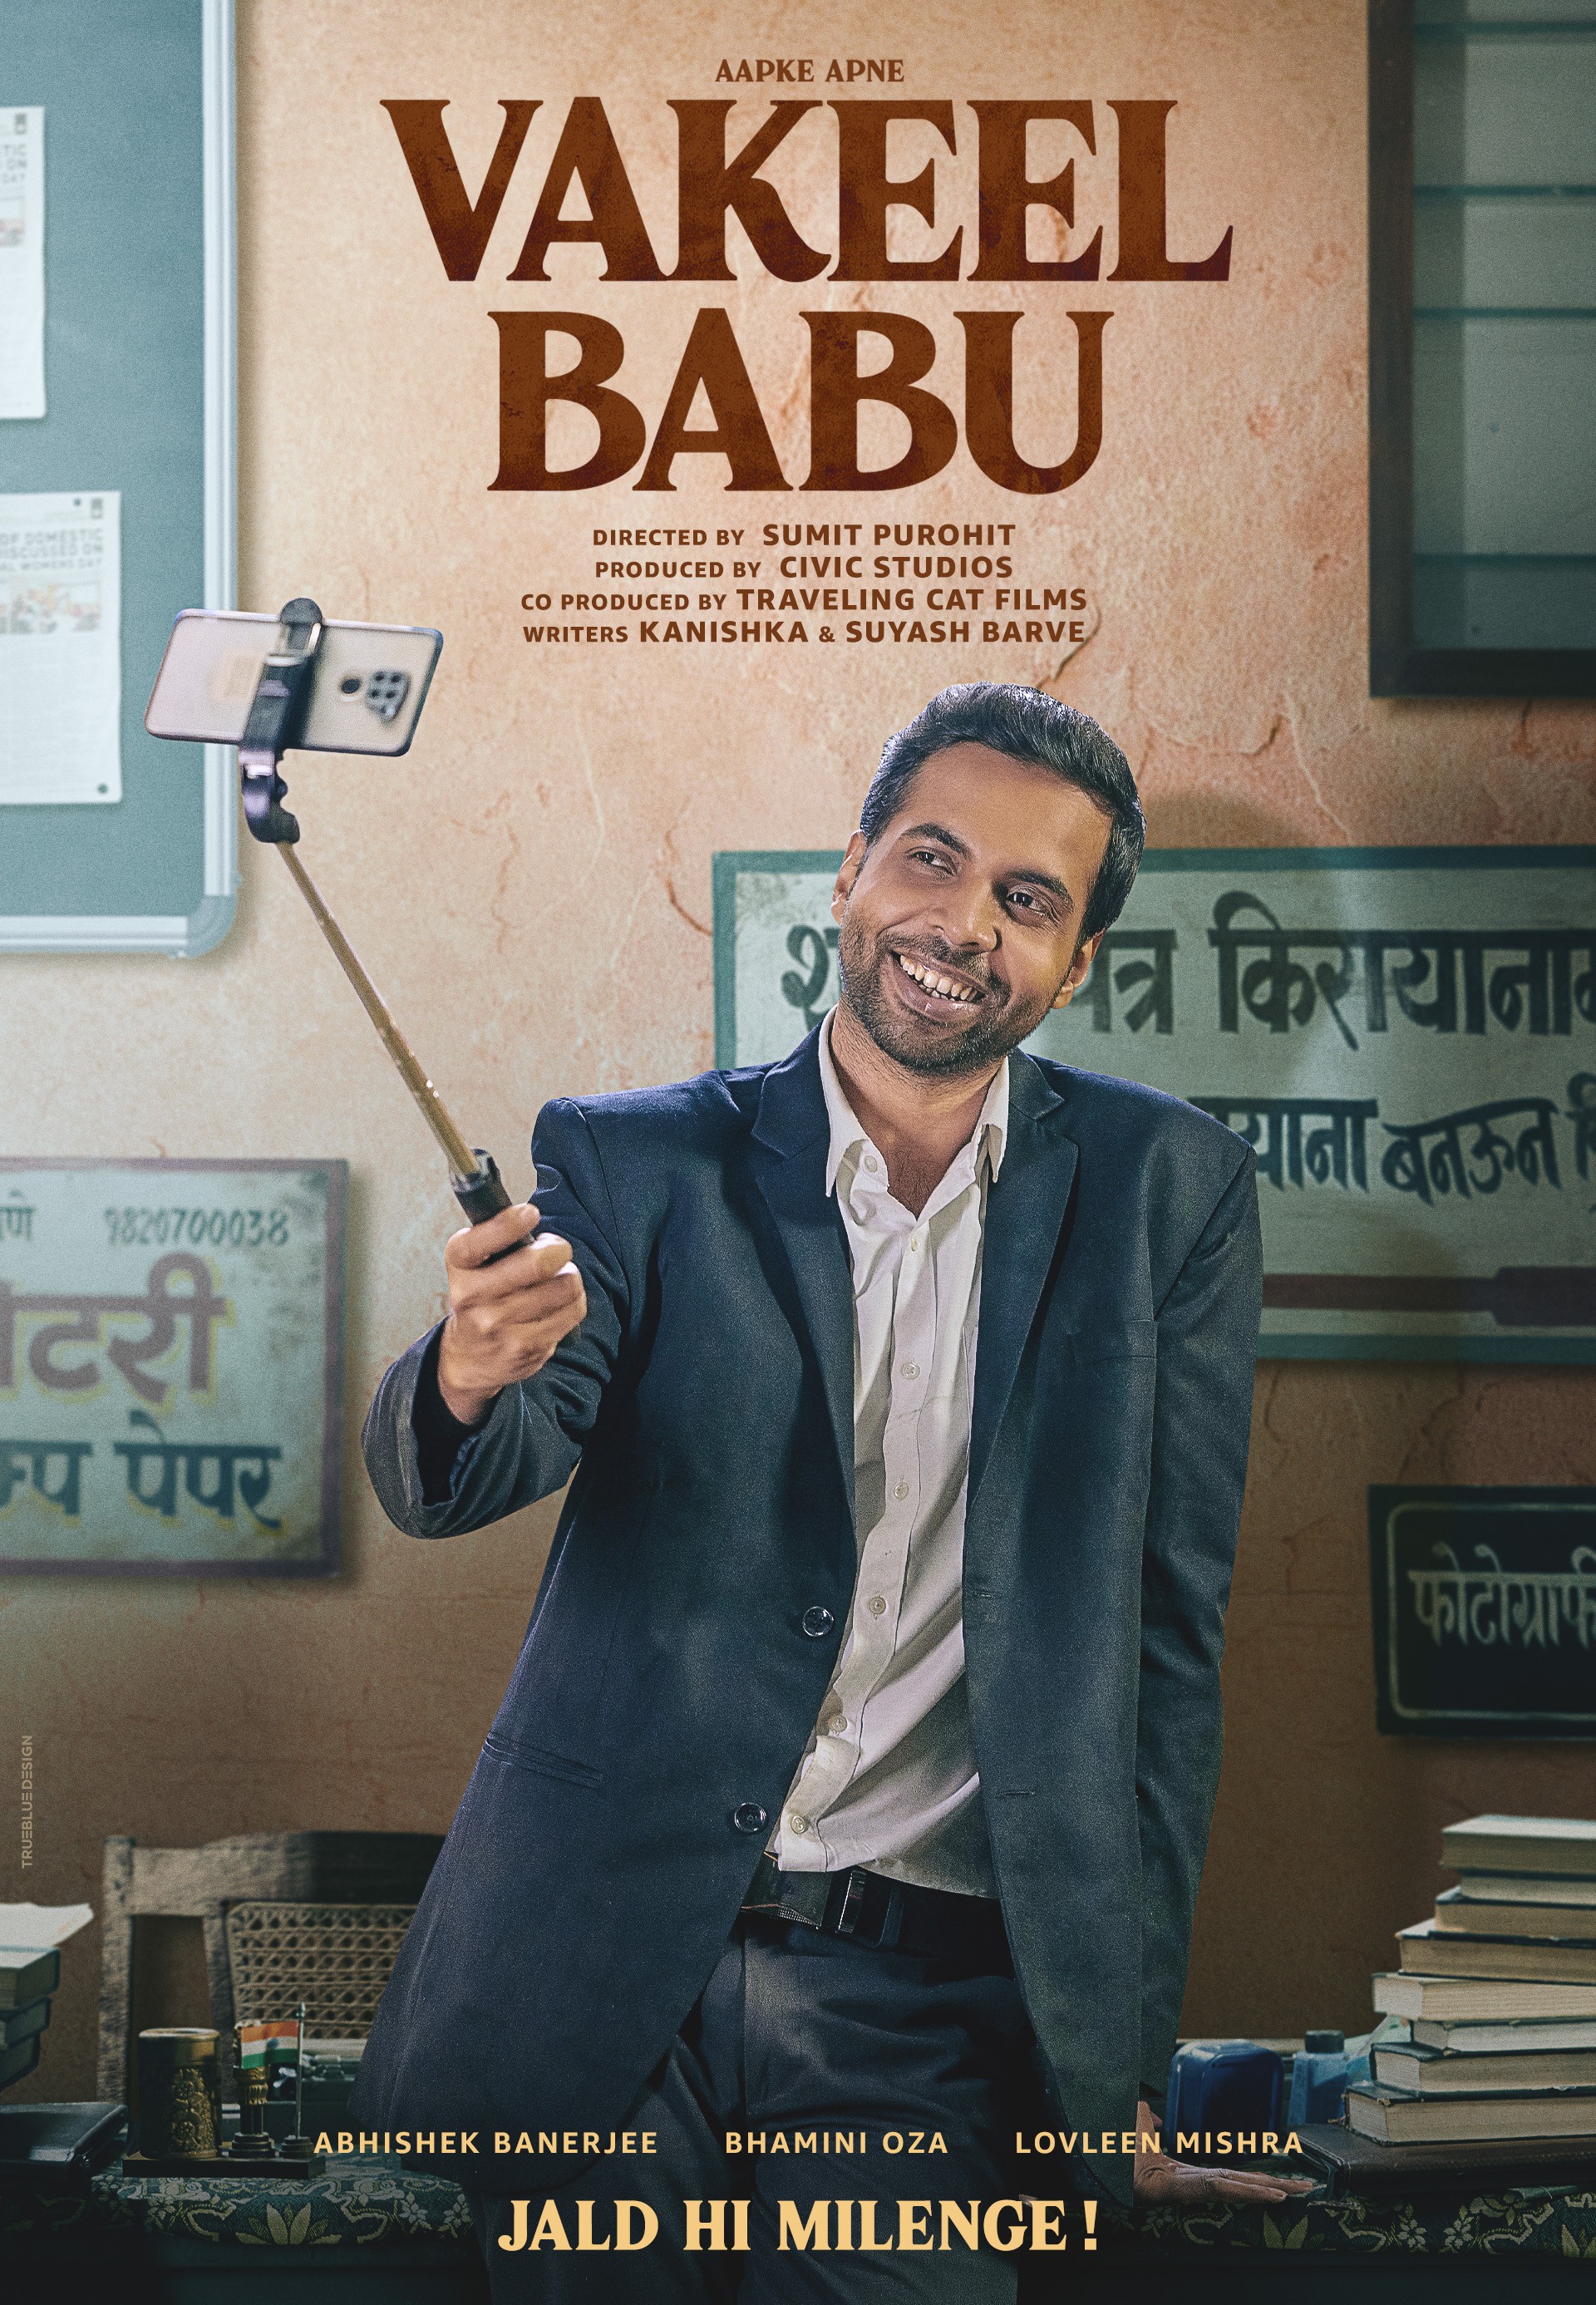 Mega Sized Movie Poster Image for Vakeel Babu